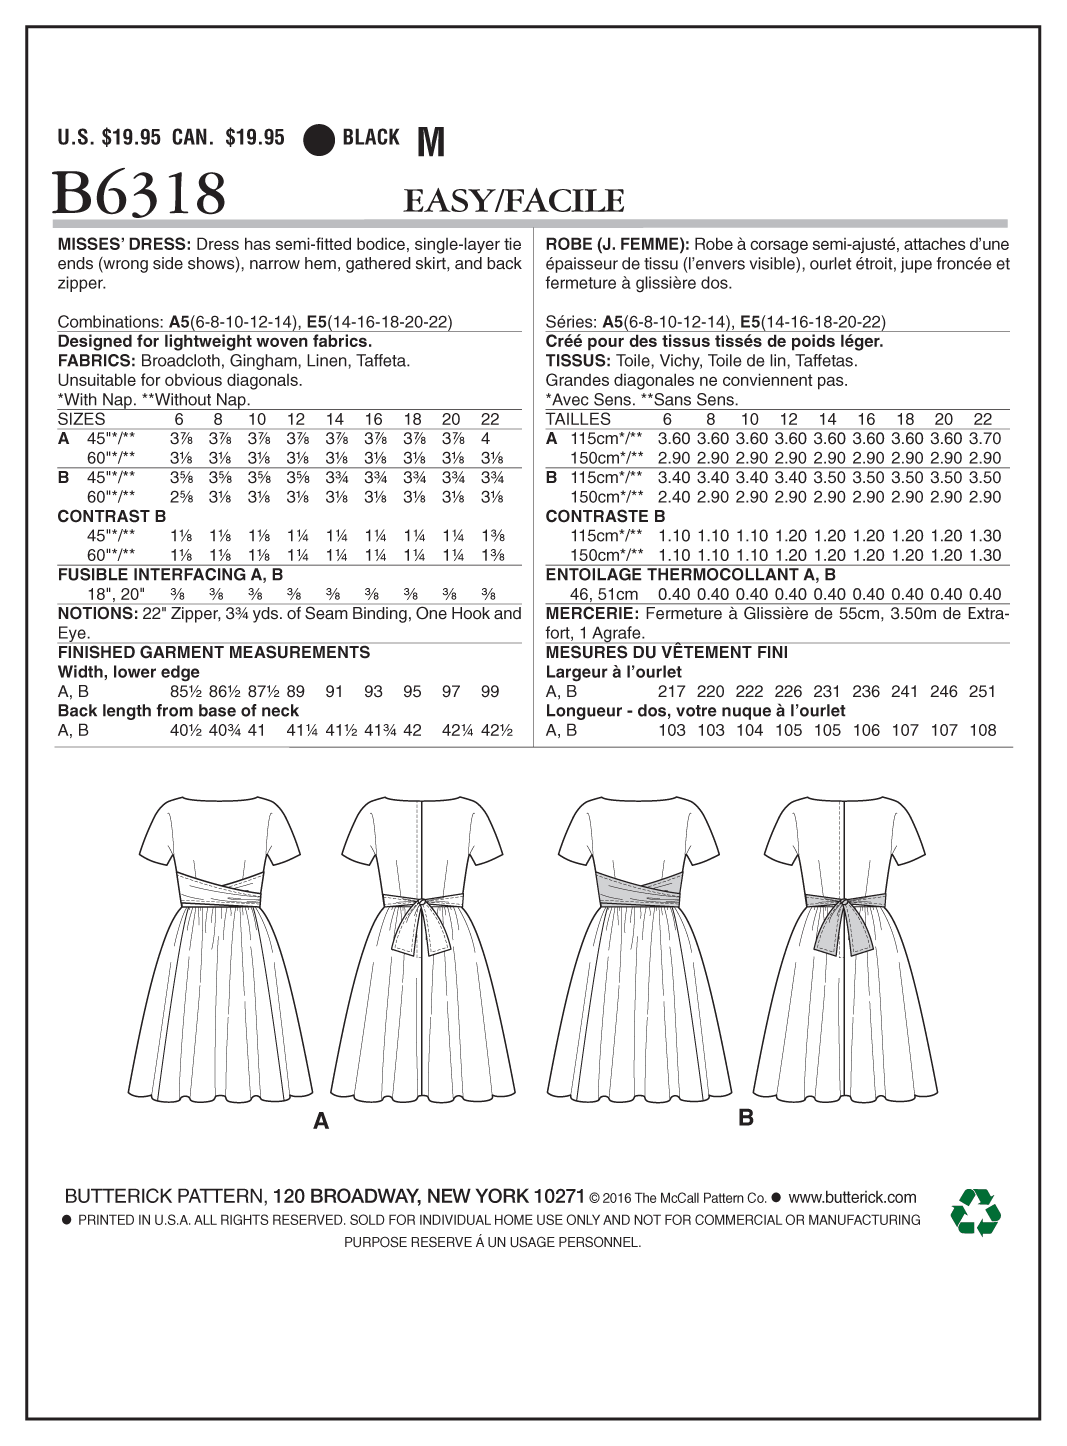 Butterick Sewing Pattern B6318 Retro Dress